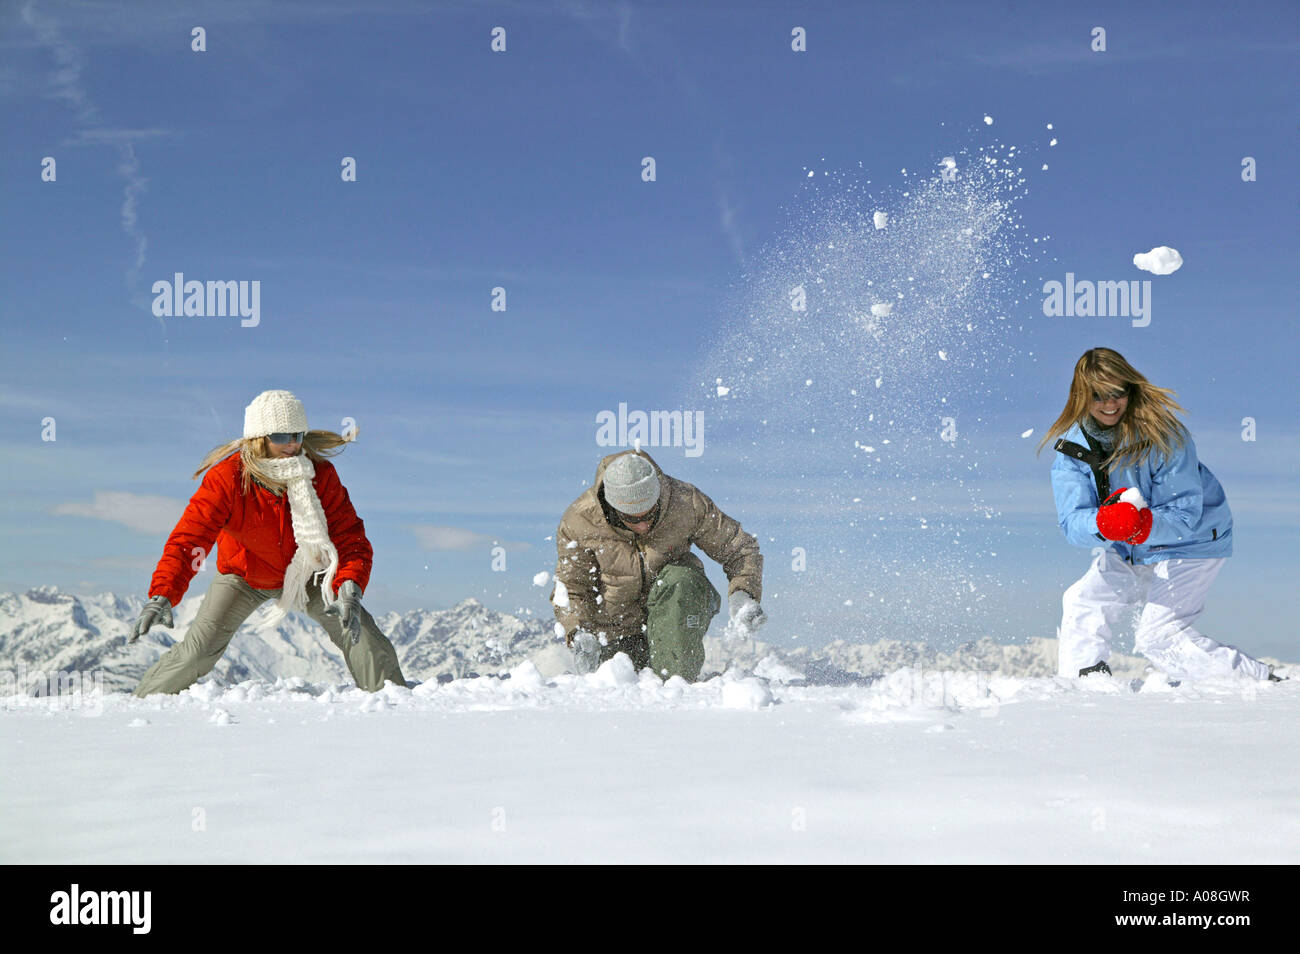 Junges Leute haben Spass bei einer Schneeballschlacht, young people having snowball fight fun Stock Photo